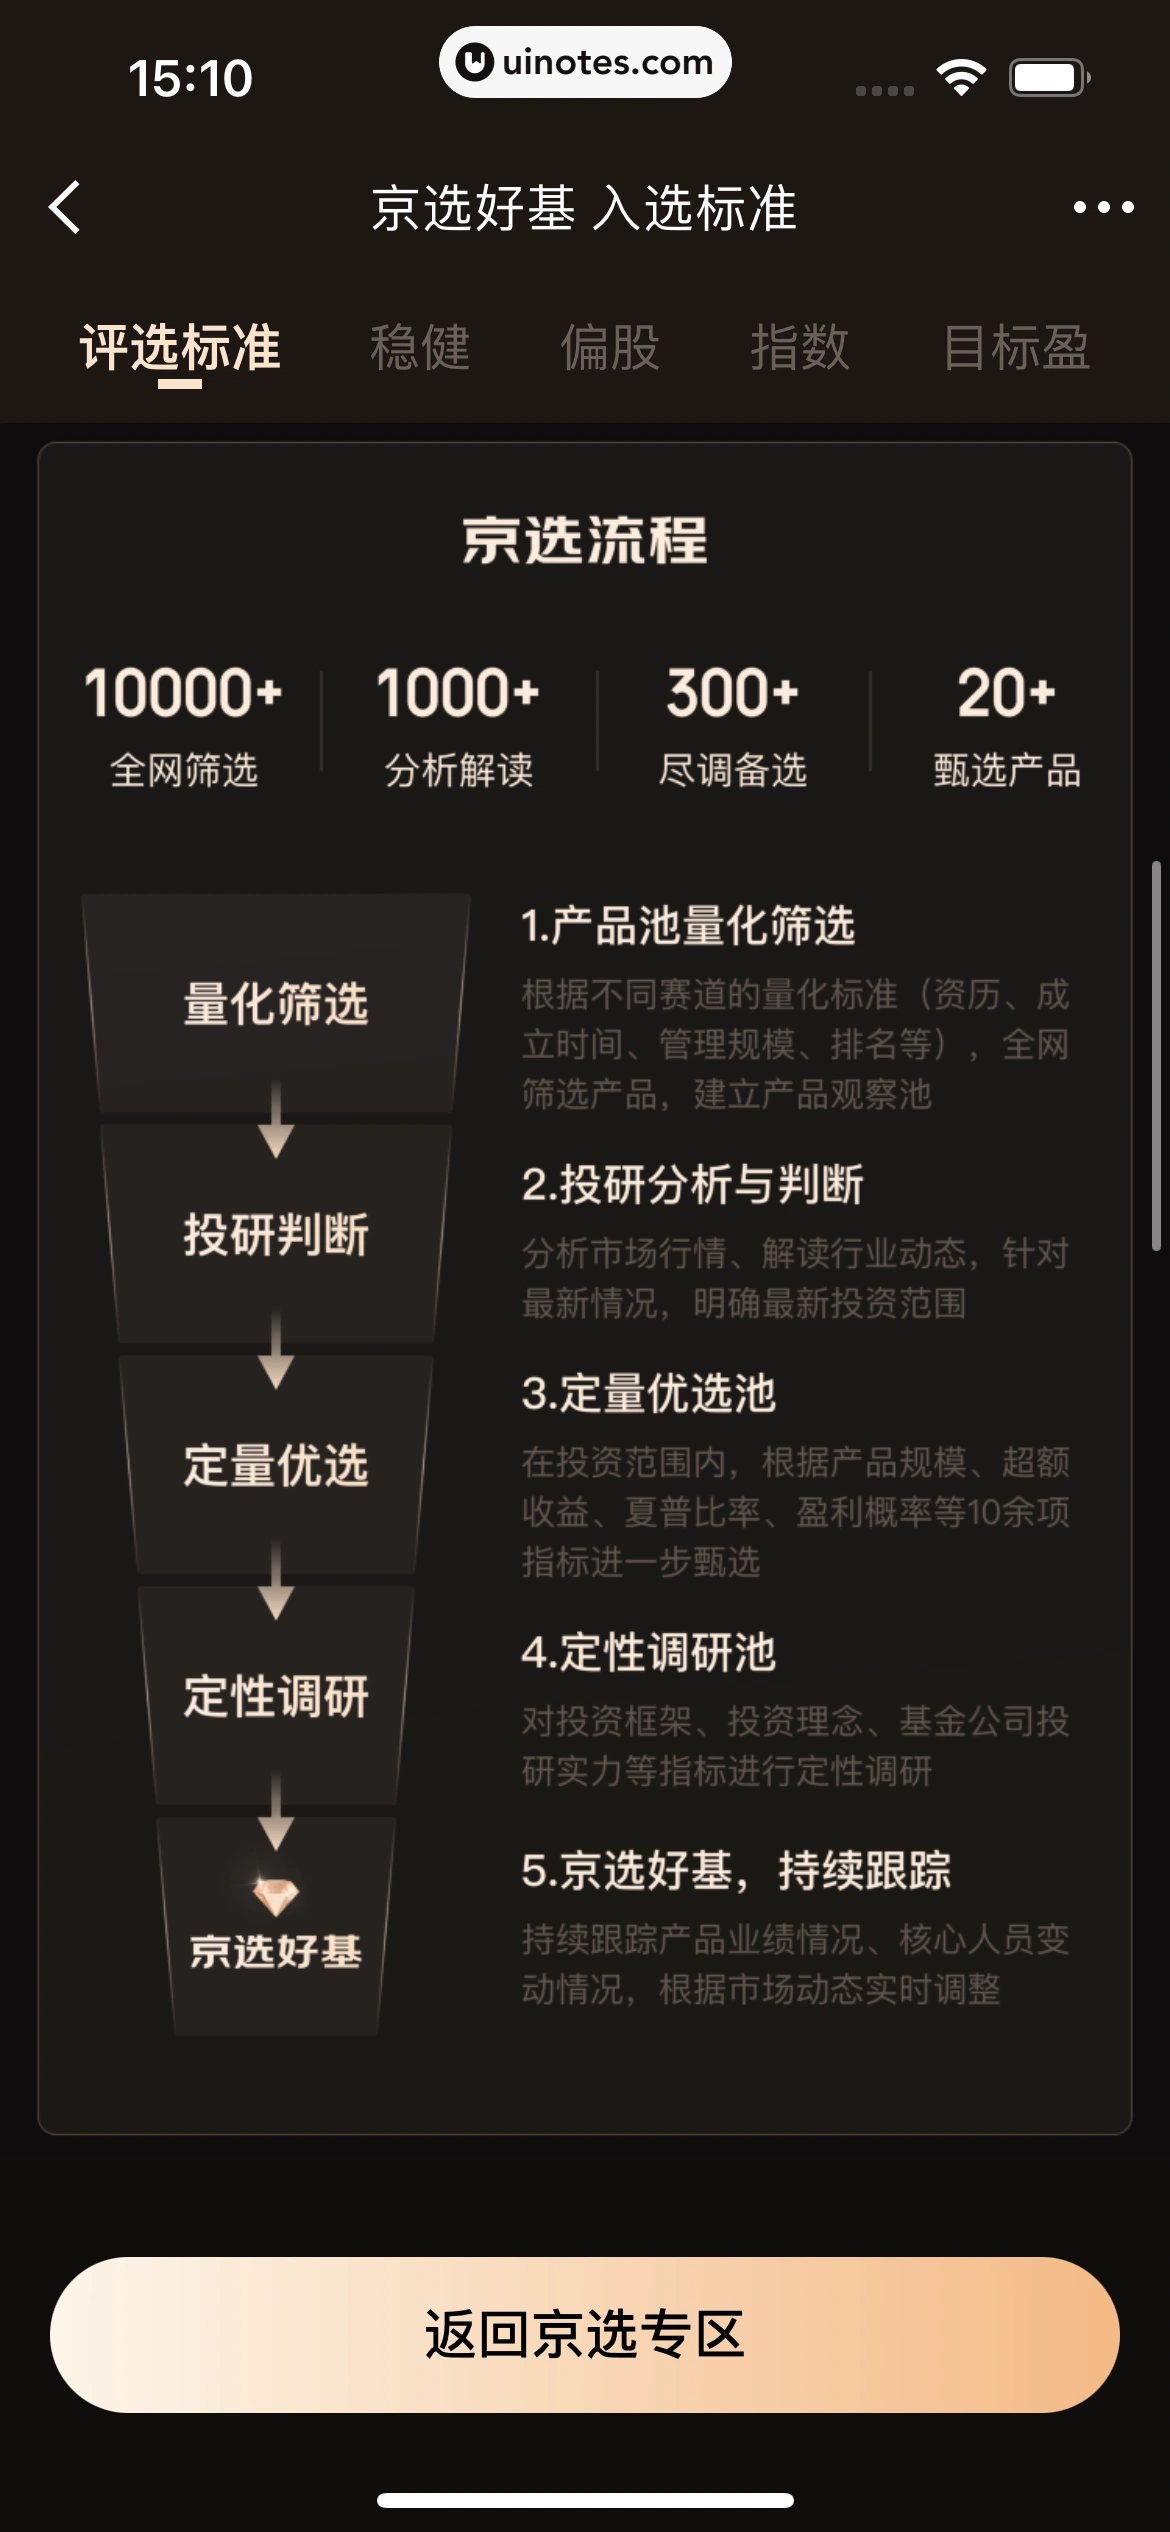 京东金融 App 截图 191 - UI Notes